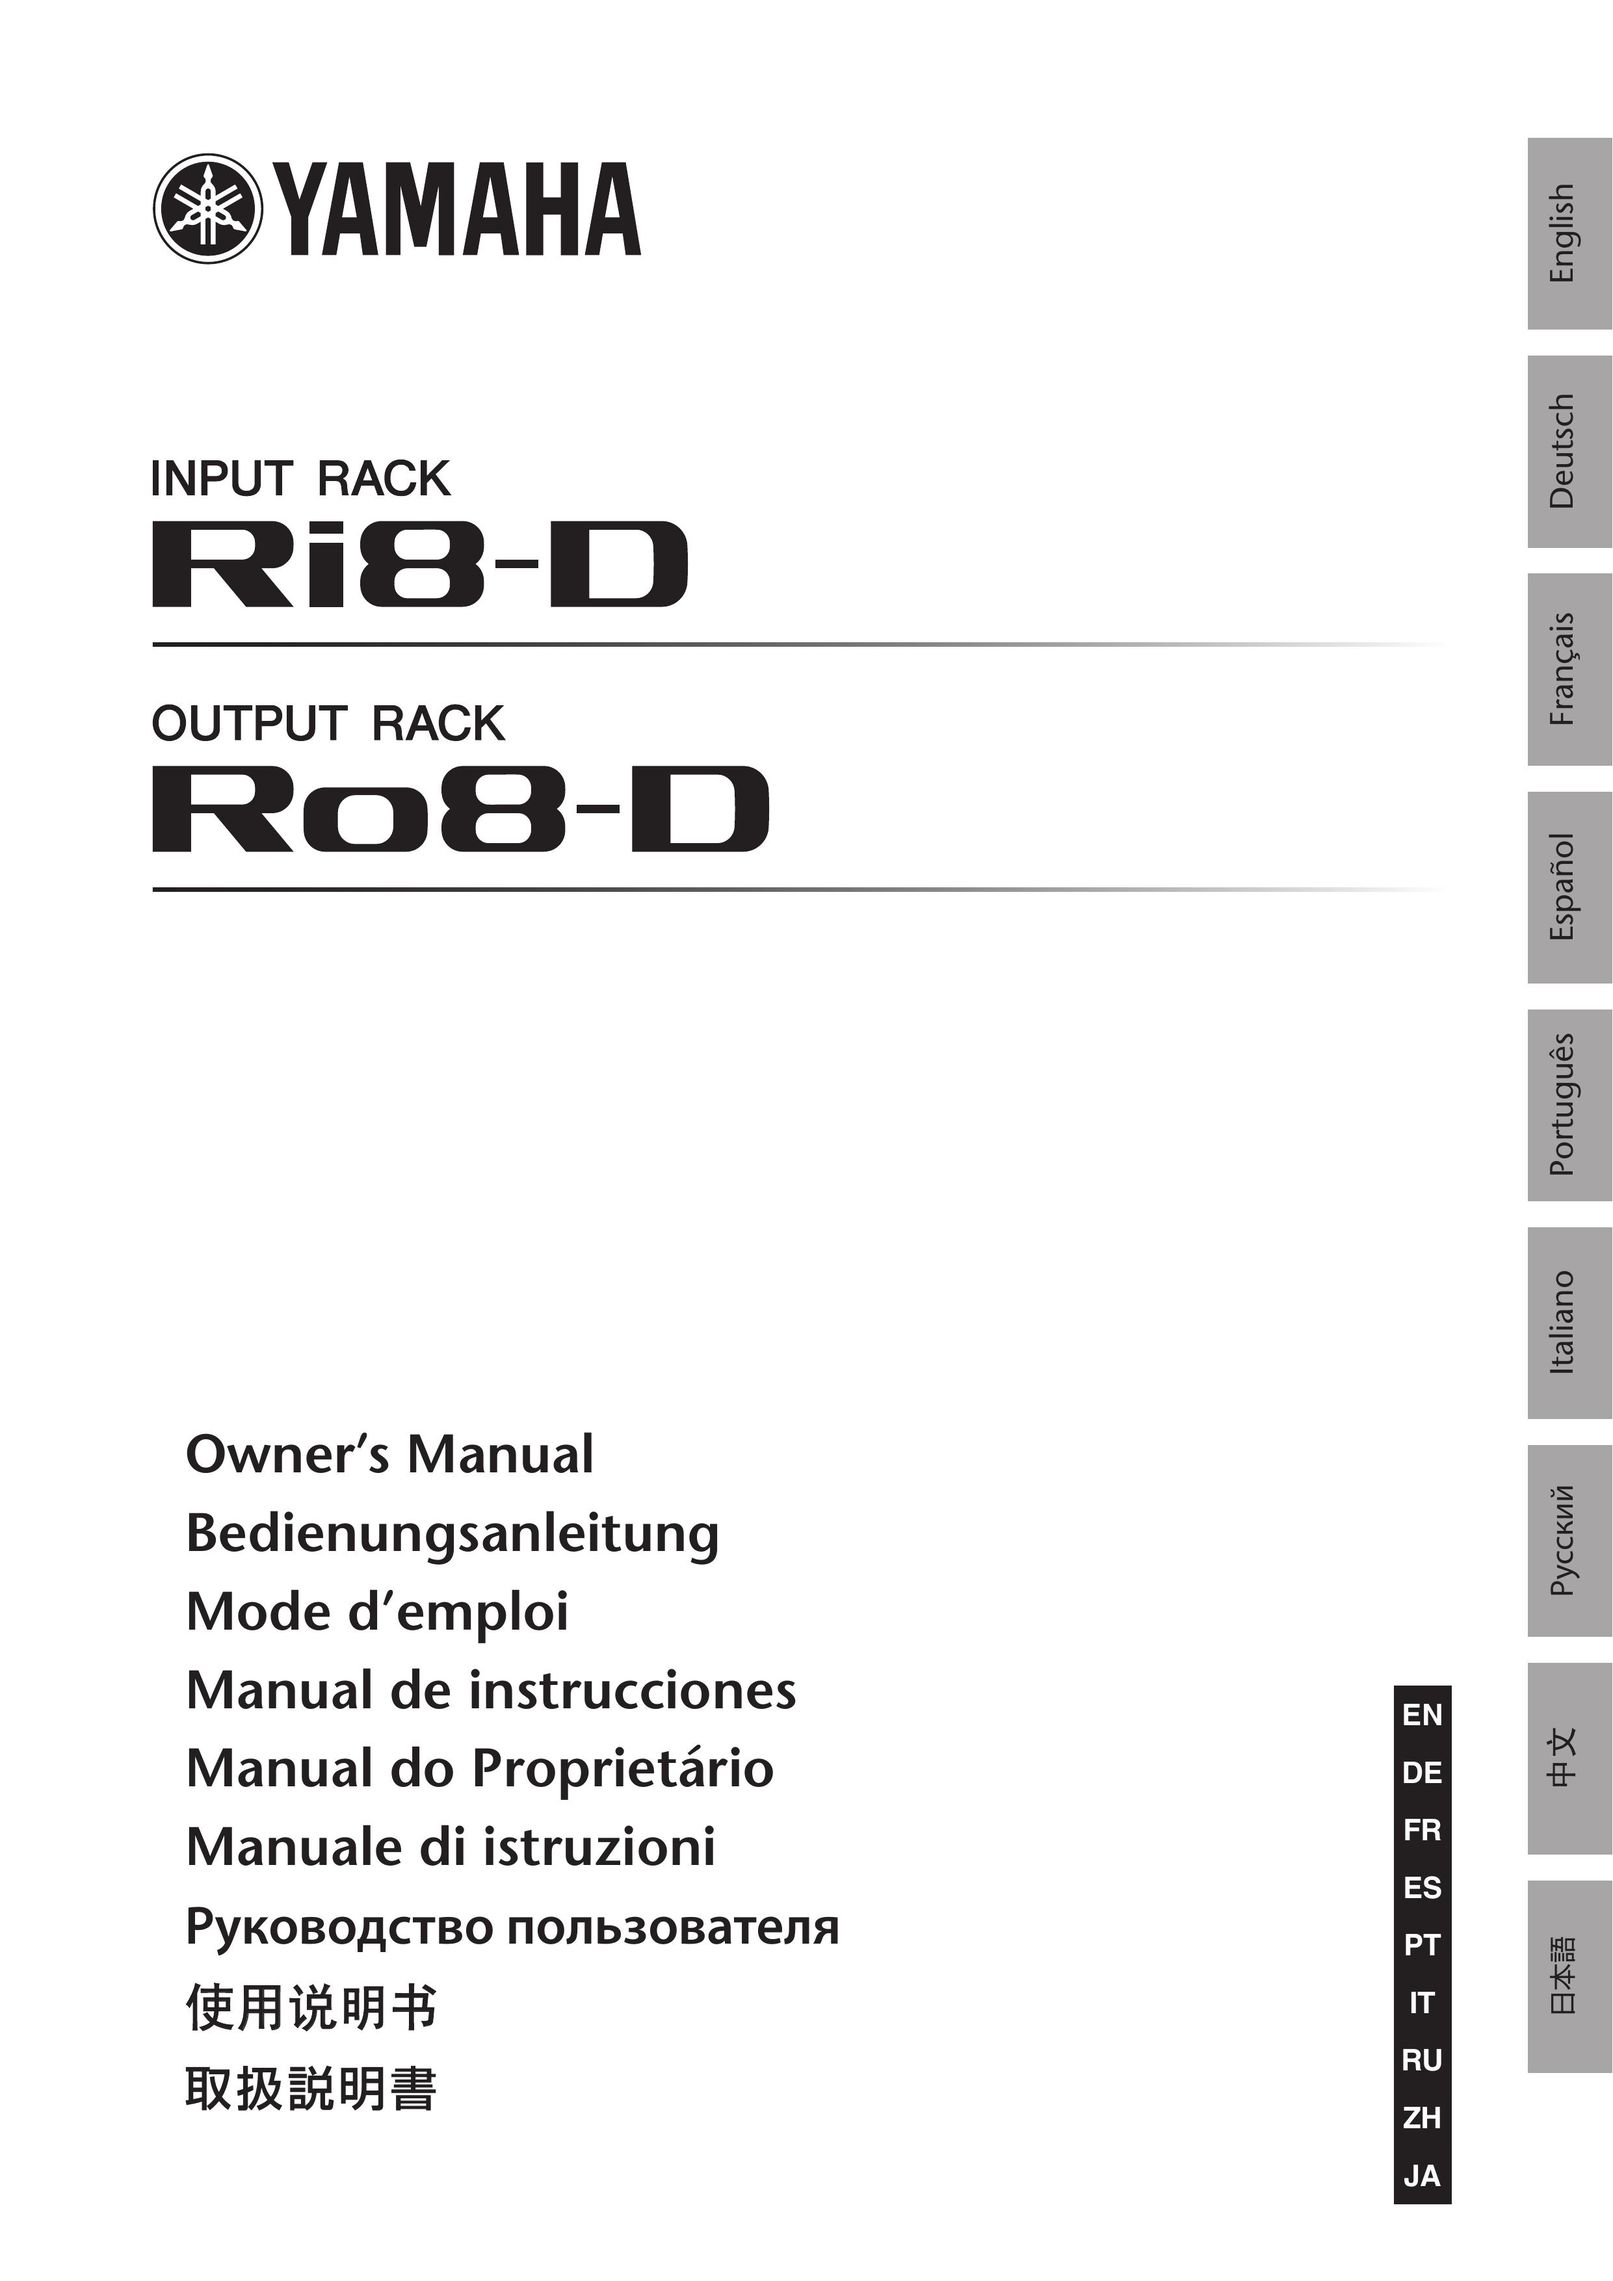 Yamaha Ri8-D Doll User Manual